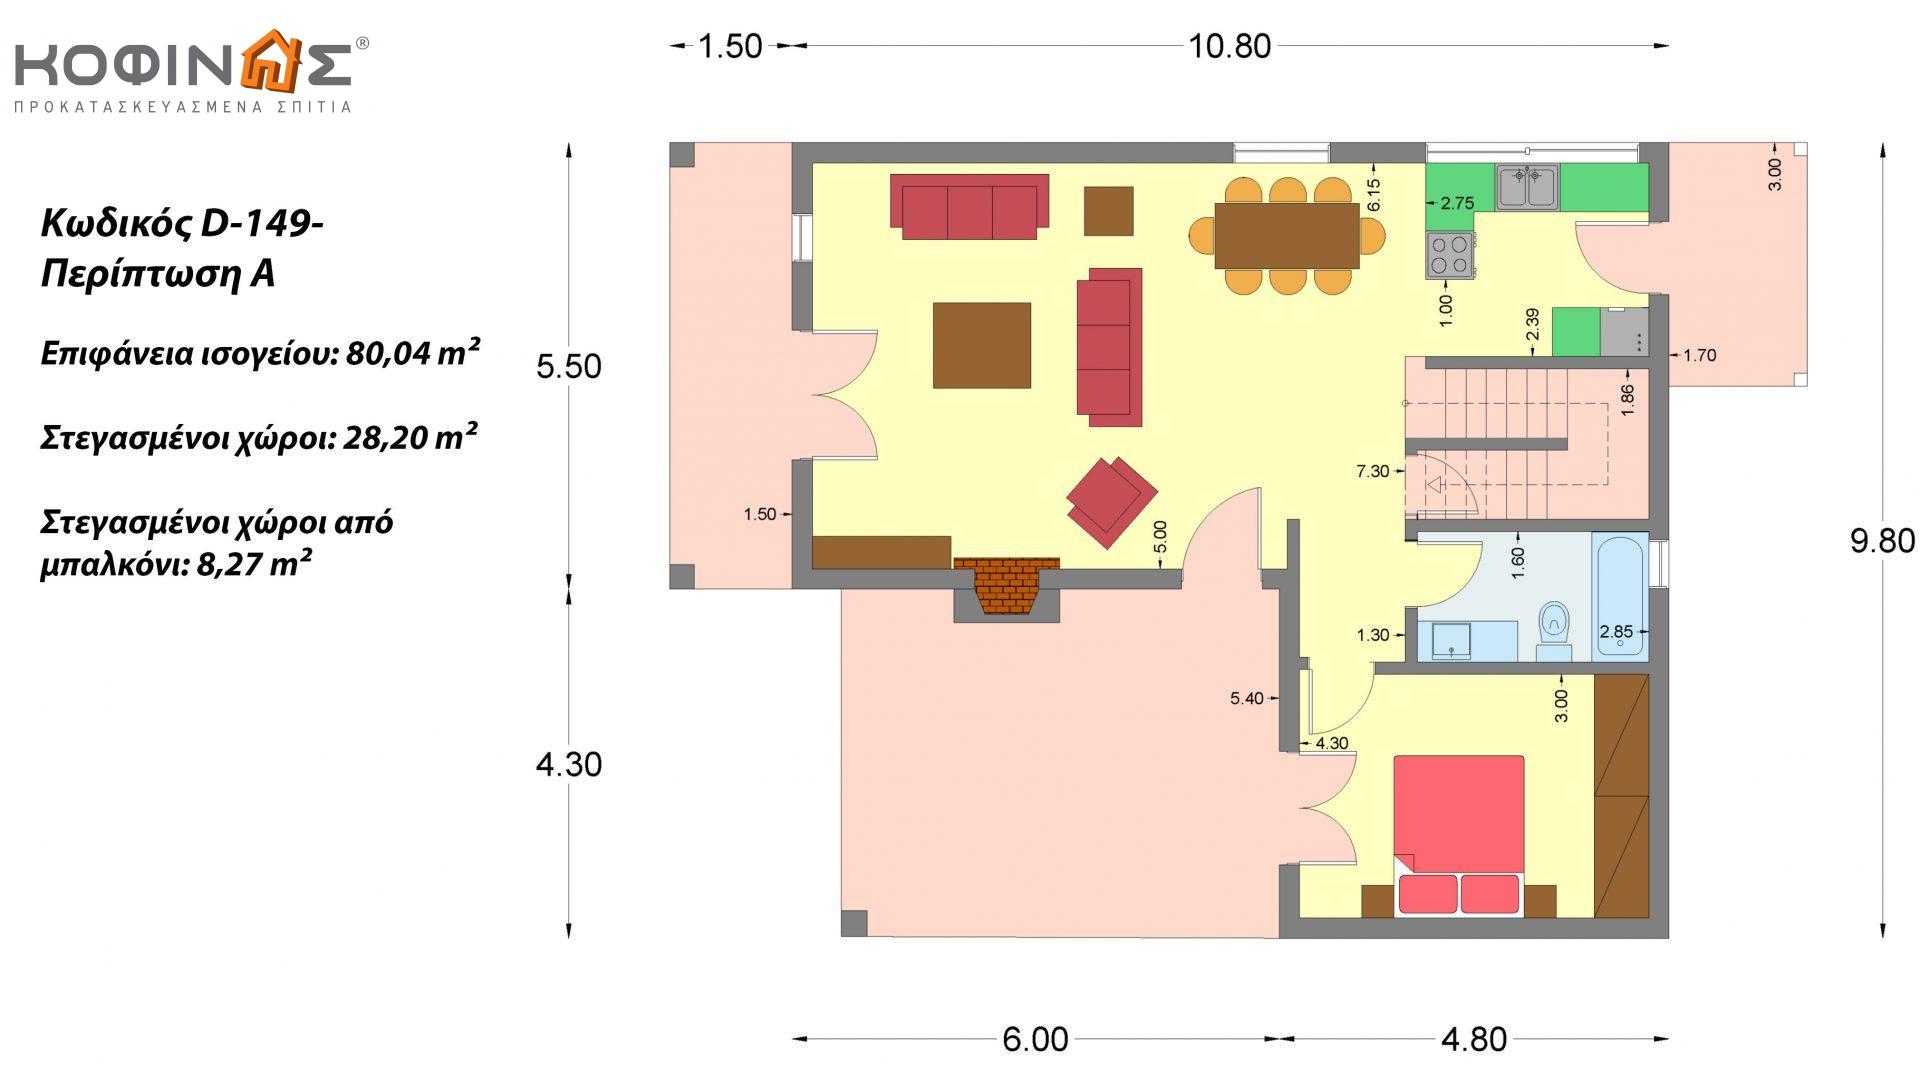 Διώροφη Κατοικία D-149, συνολικής επιφάνειας 149,13 τ.μ., συνολική επιφάνεια στεγασμένων χώρων 36.47 τ.μ., μπαλκόνι 19.22 τ.μ.